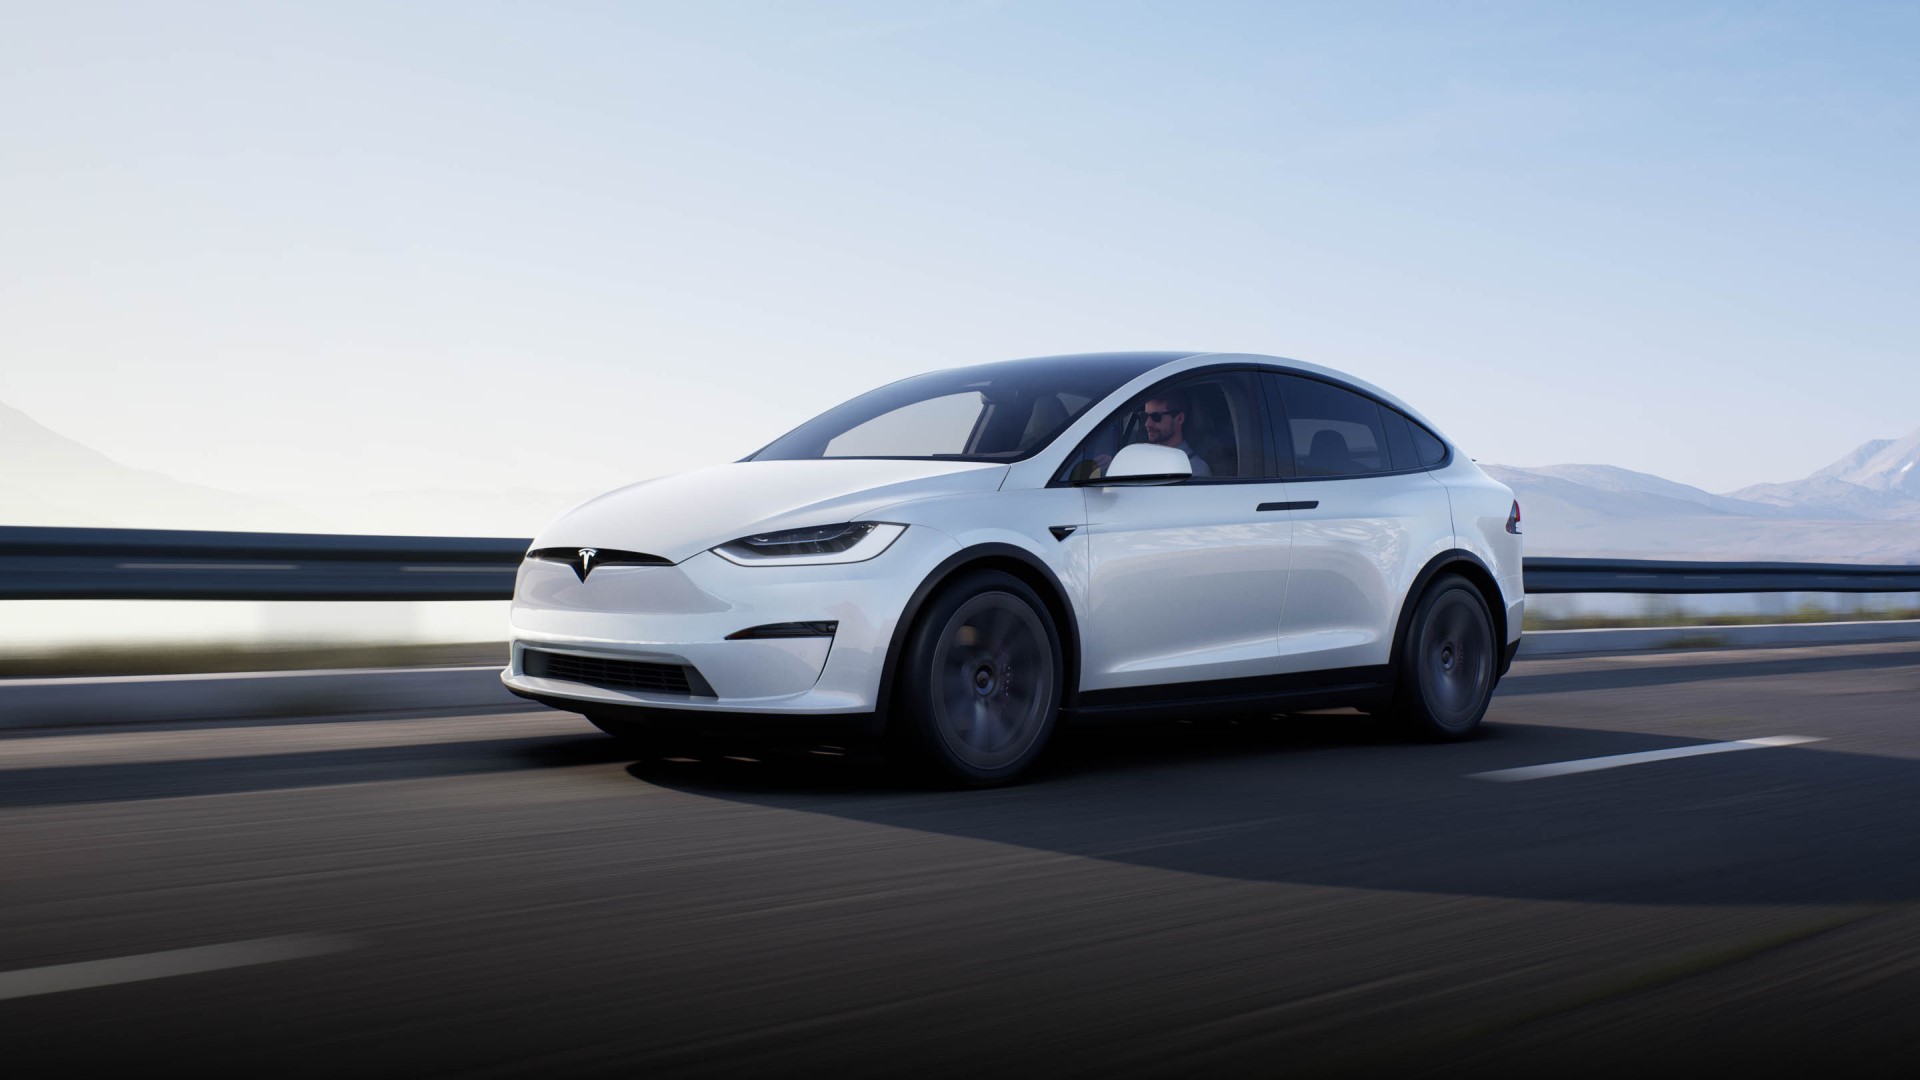 Tesla เริ่มส่งมอบรถยนต์ SUV ไฟฟ้าสุดหรู Model X ที่ดีไซน์ใหม่แล้ว